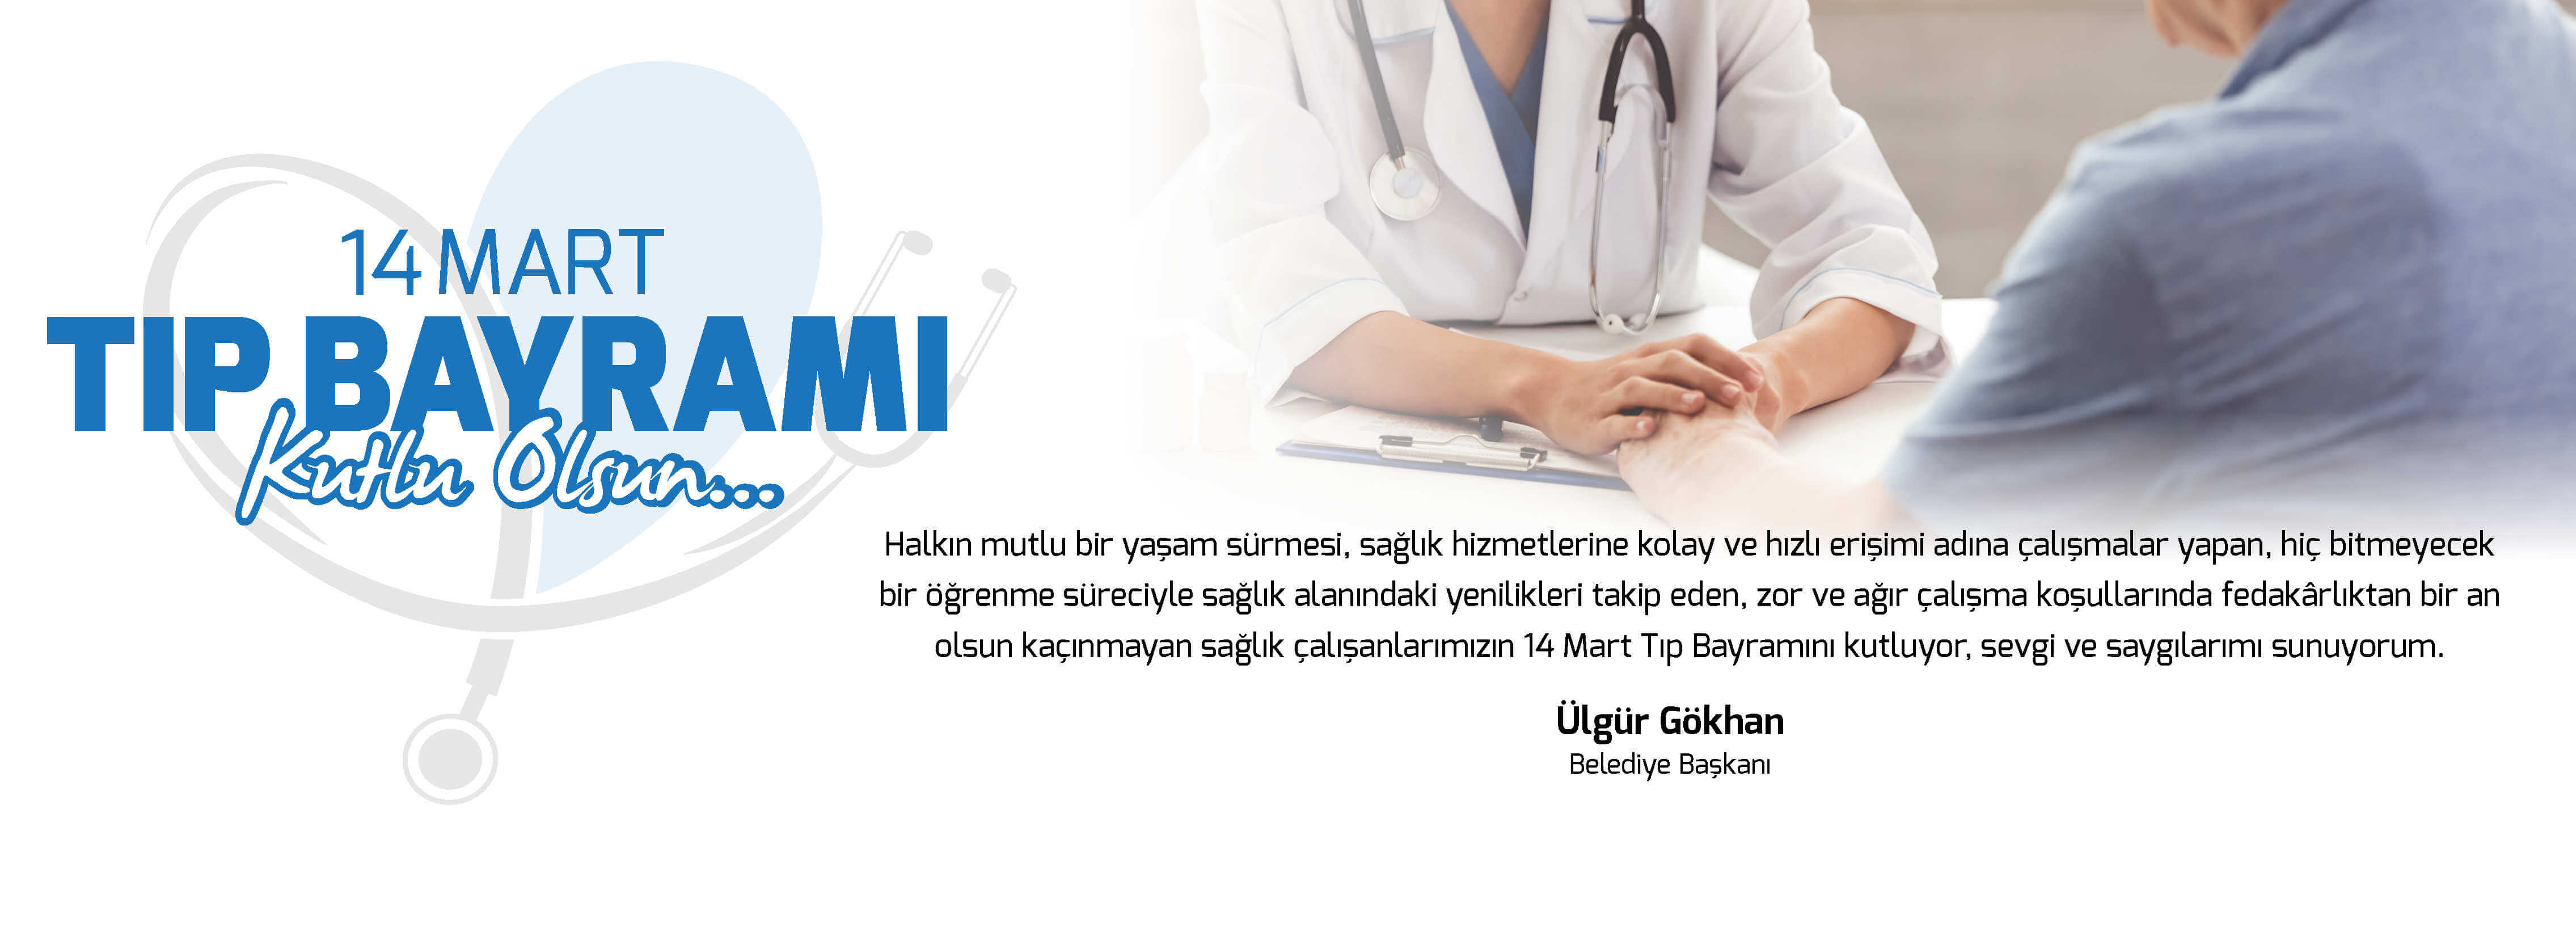 Belediye Başkanı Sayın Ülgür Gökhan'ın 14 Mart Tıp Bayramı Mesajı...